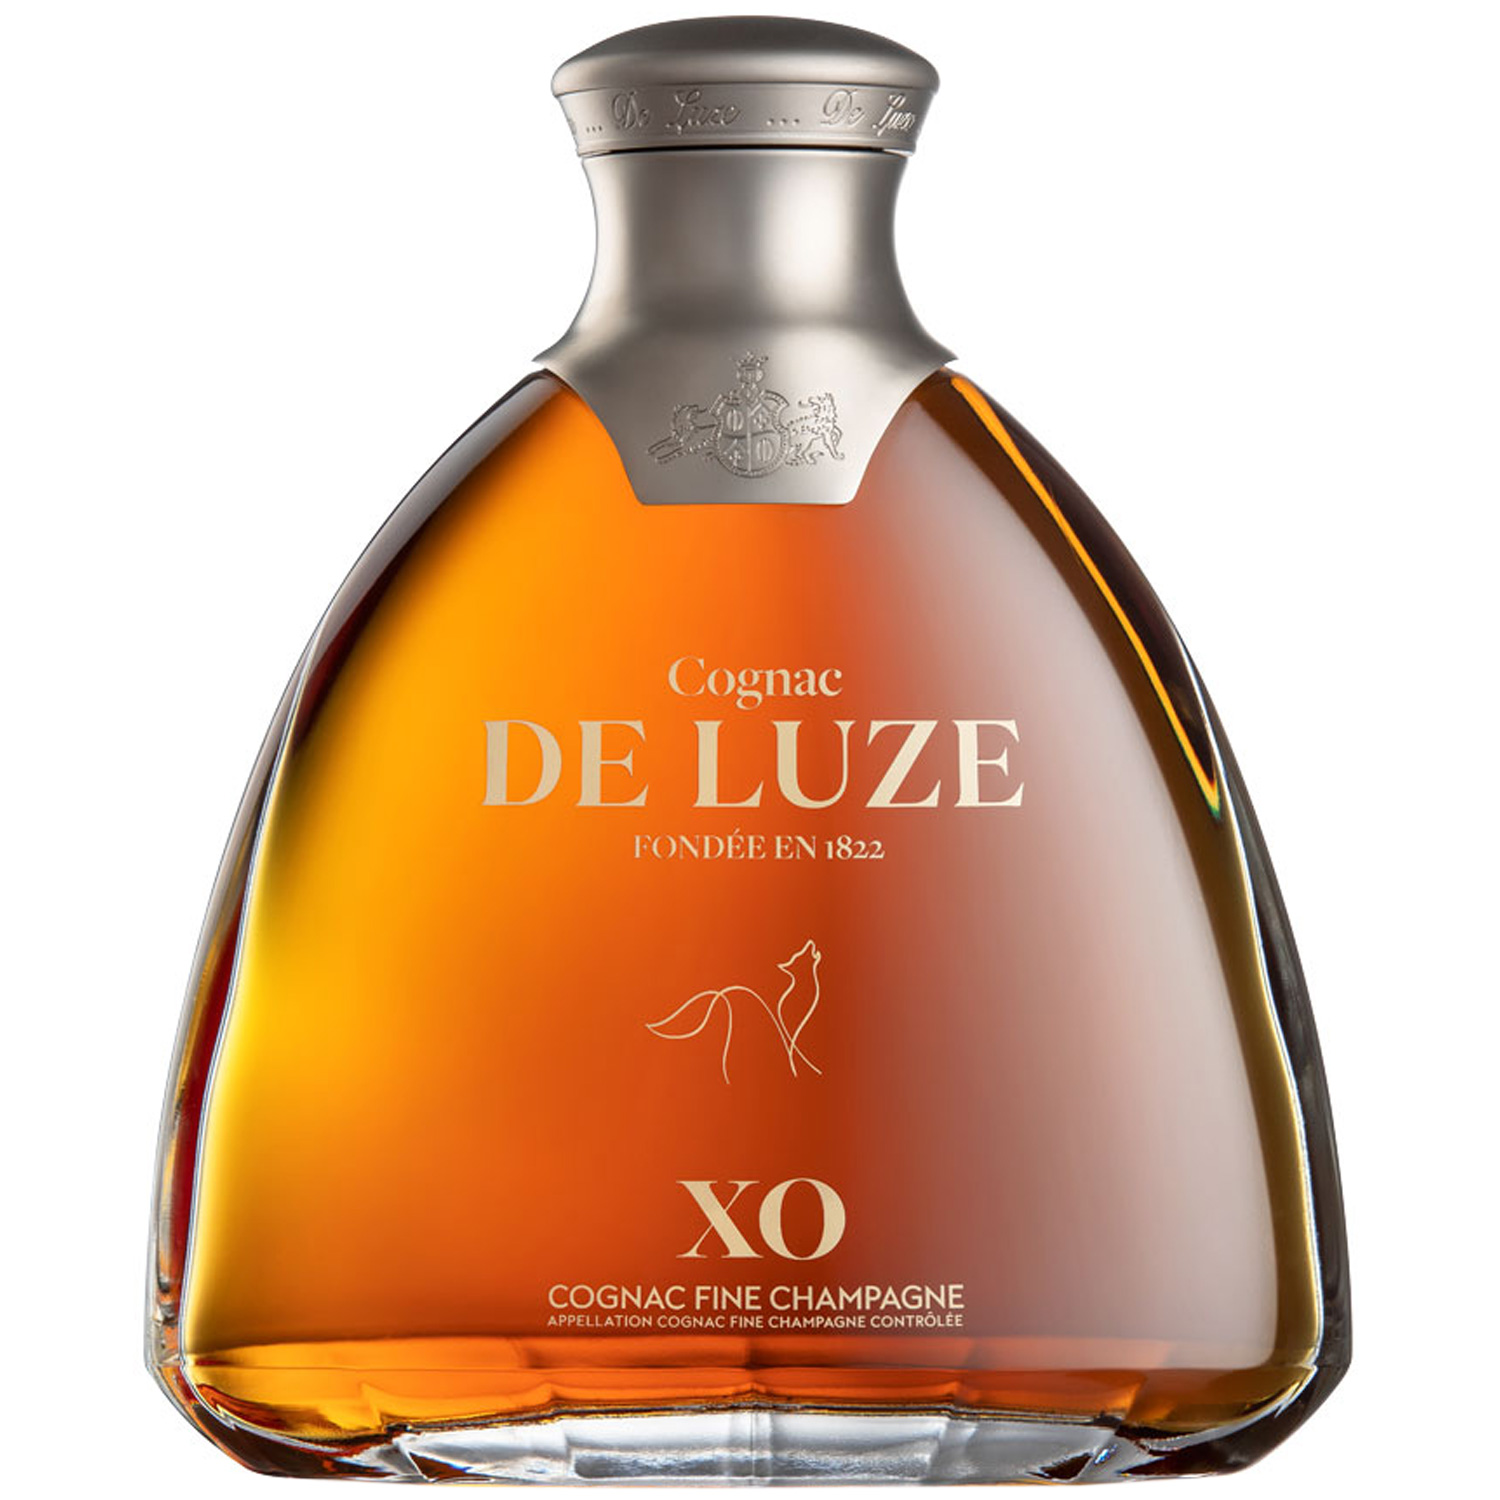 De Luze Fine Champagne Cognac XO